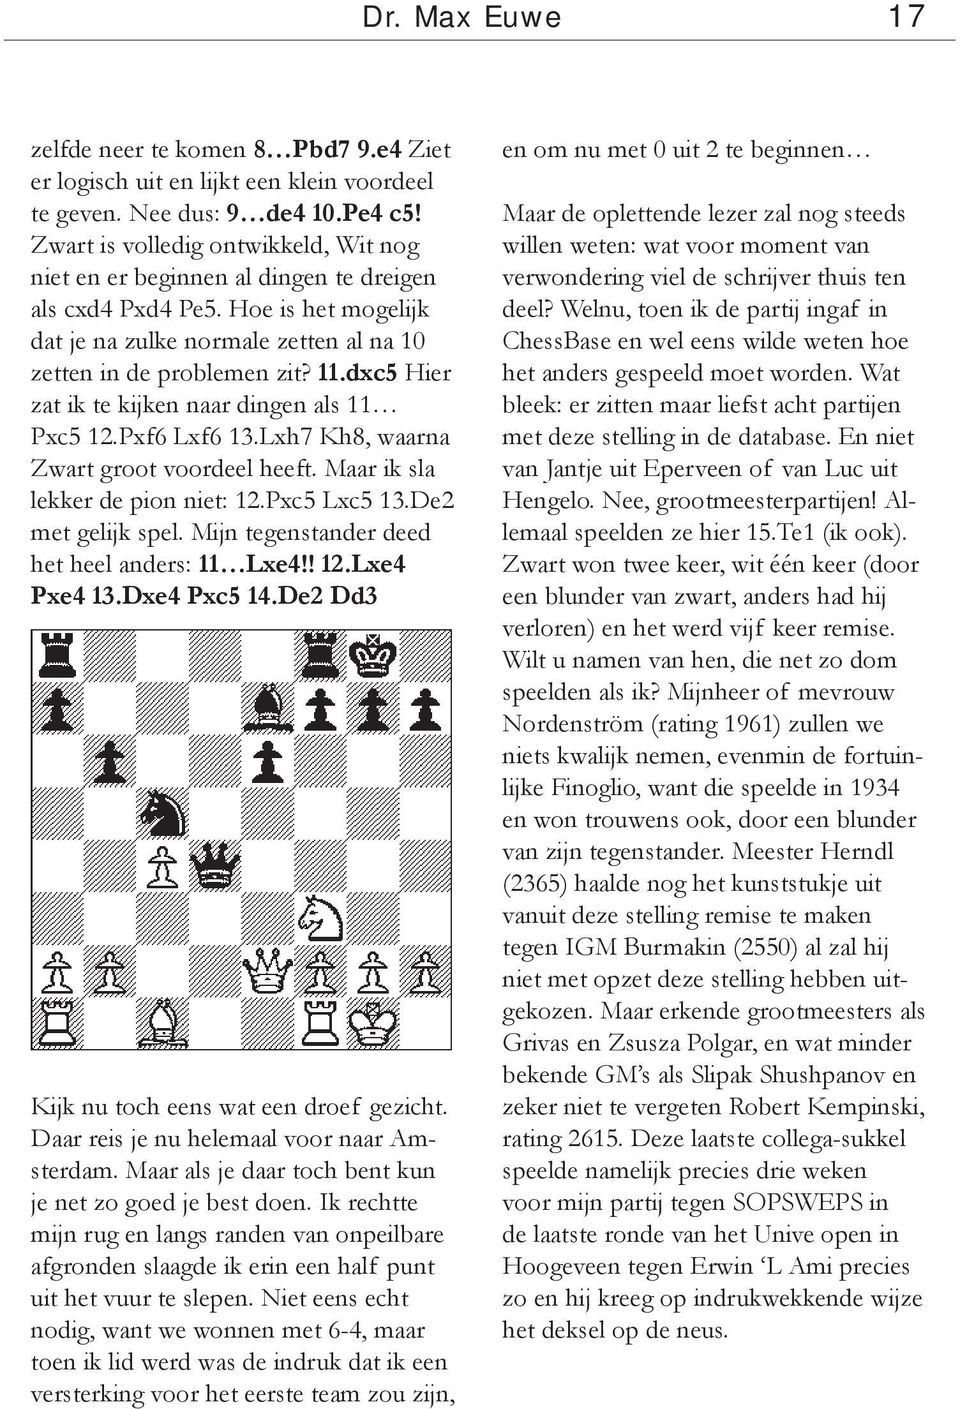 dxc5 Hier zat ik te kijken naar dingen als 11 Pxc5 12.Pxf6 Lxf6 13.Lxh7 Kh8, waarna Zwart groot voordeel heeft. Maar ik sla lekker de pion niet: 12.Pxc5 Lxc5 13.De2 met gelijk spel.